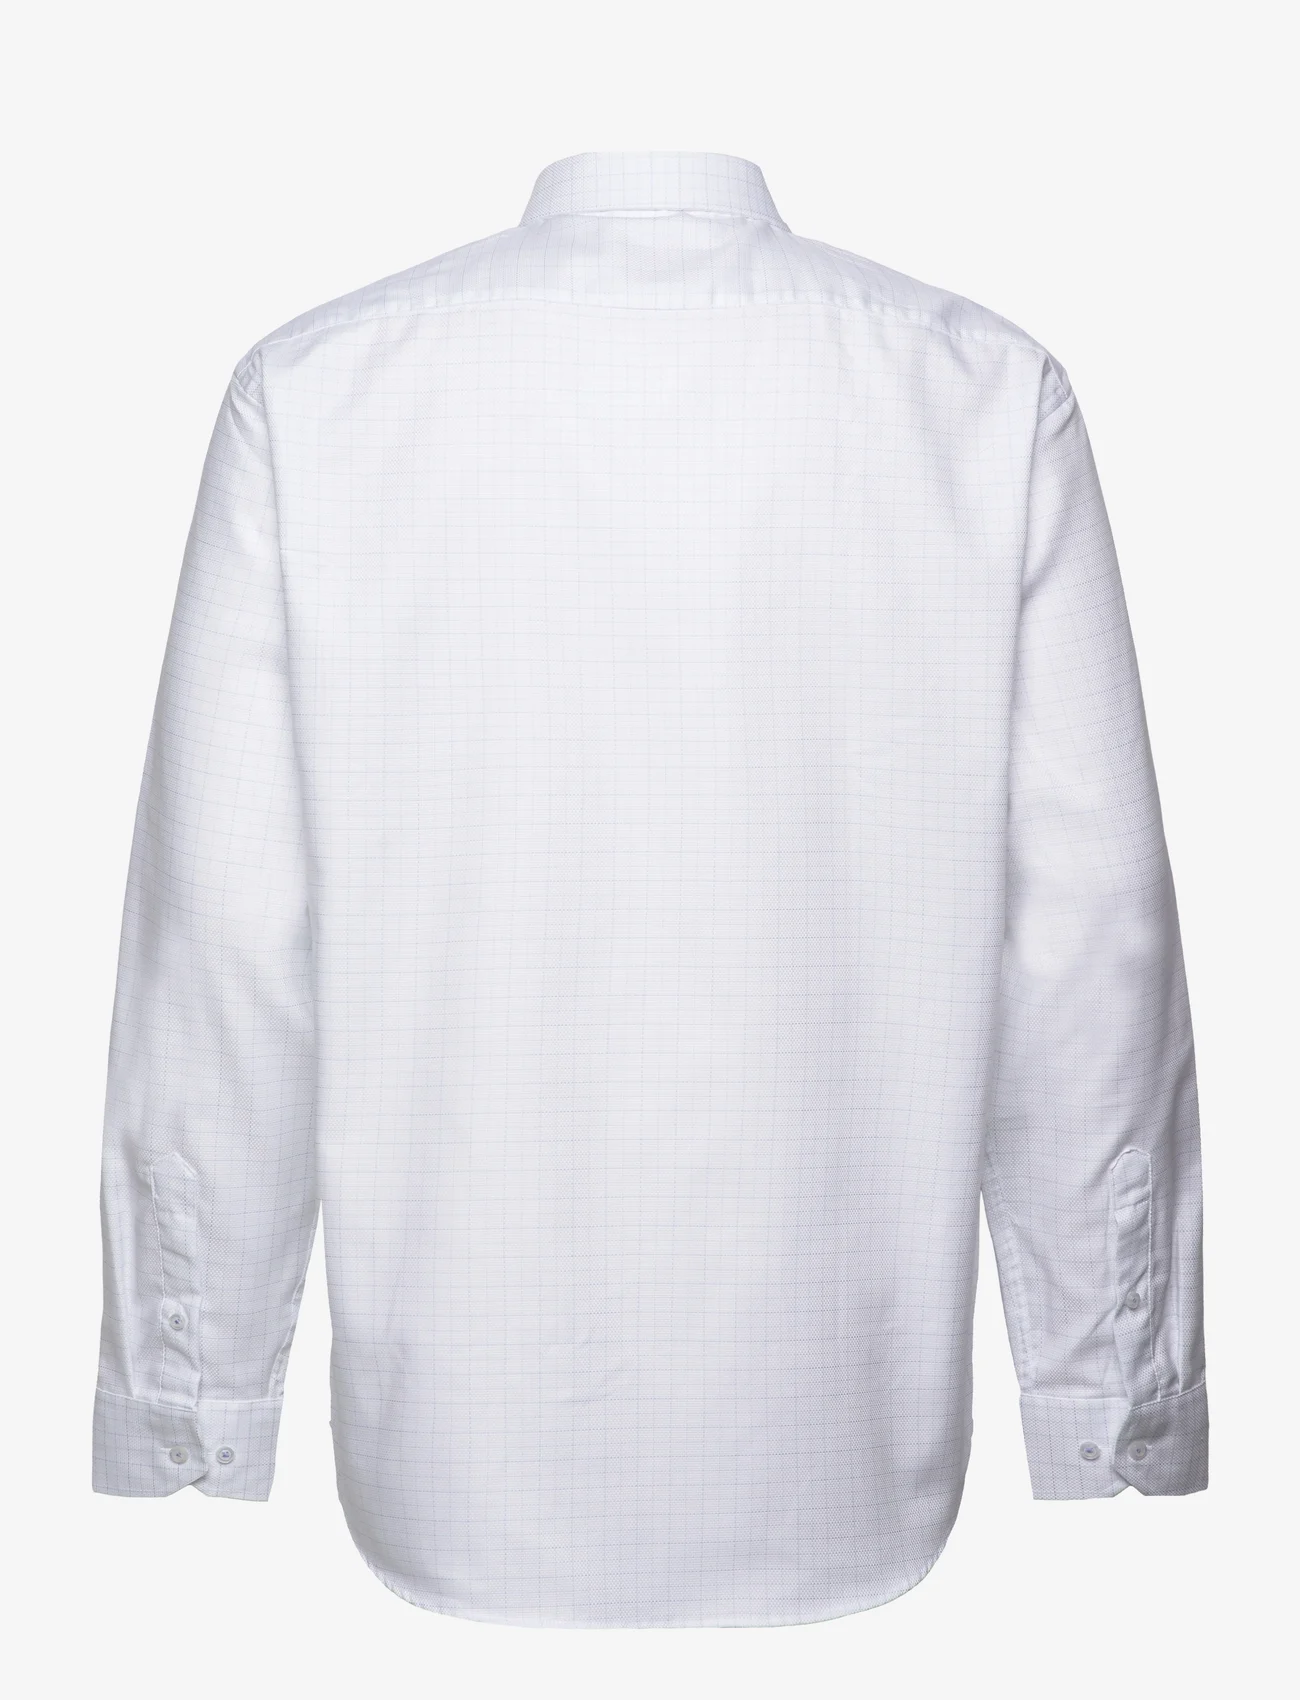 Seven Seas Copenhagen - Dallas - 23005 - basic shirts - white - 1